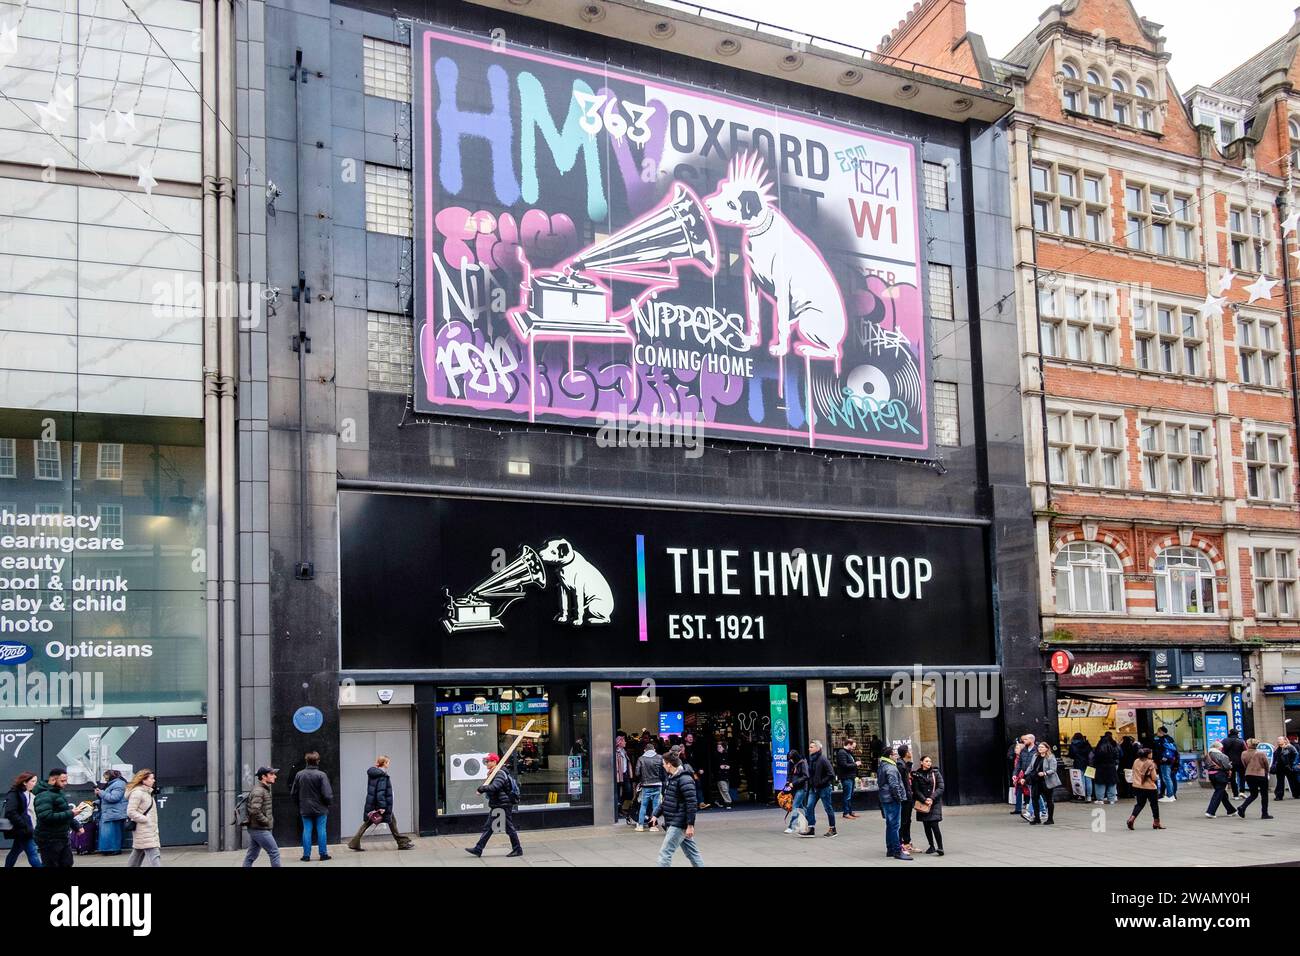 The HMV Shop, 363 Oxford Street, Londres, Royaume-Uni. Banque D'Images